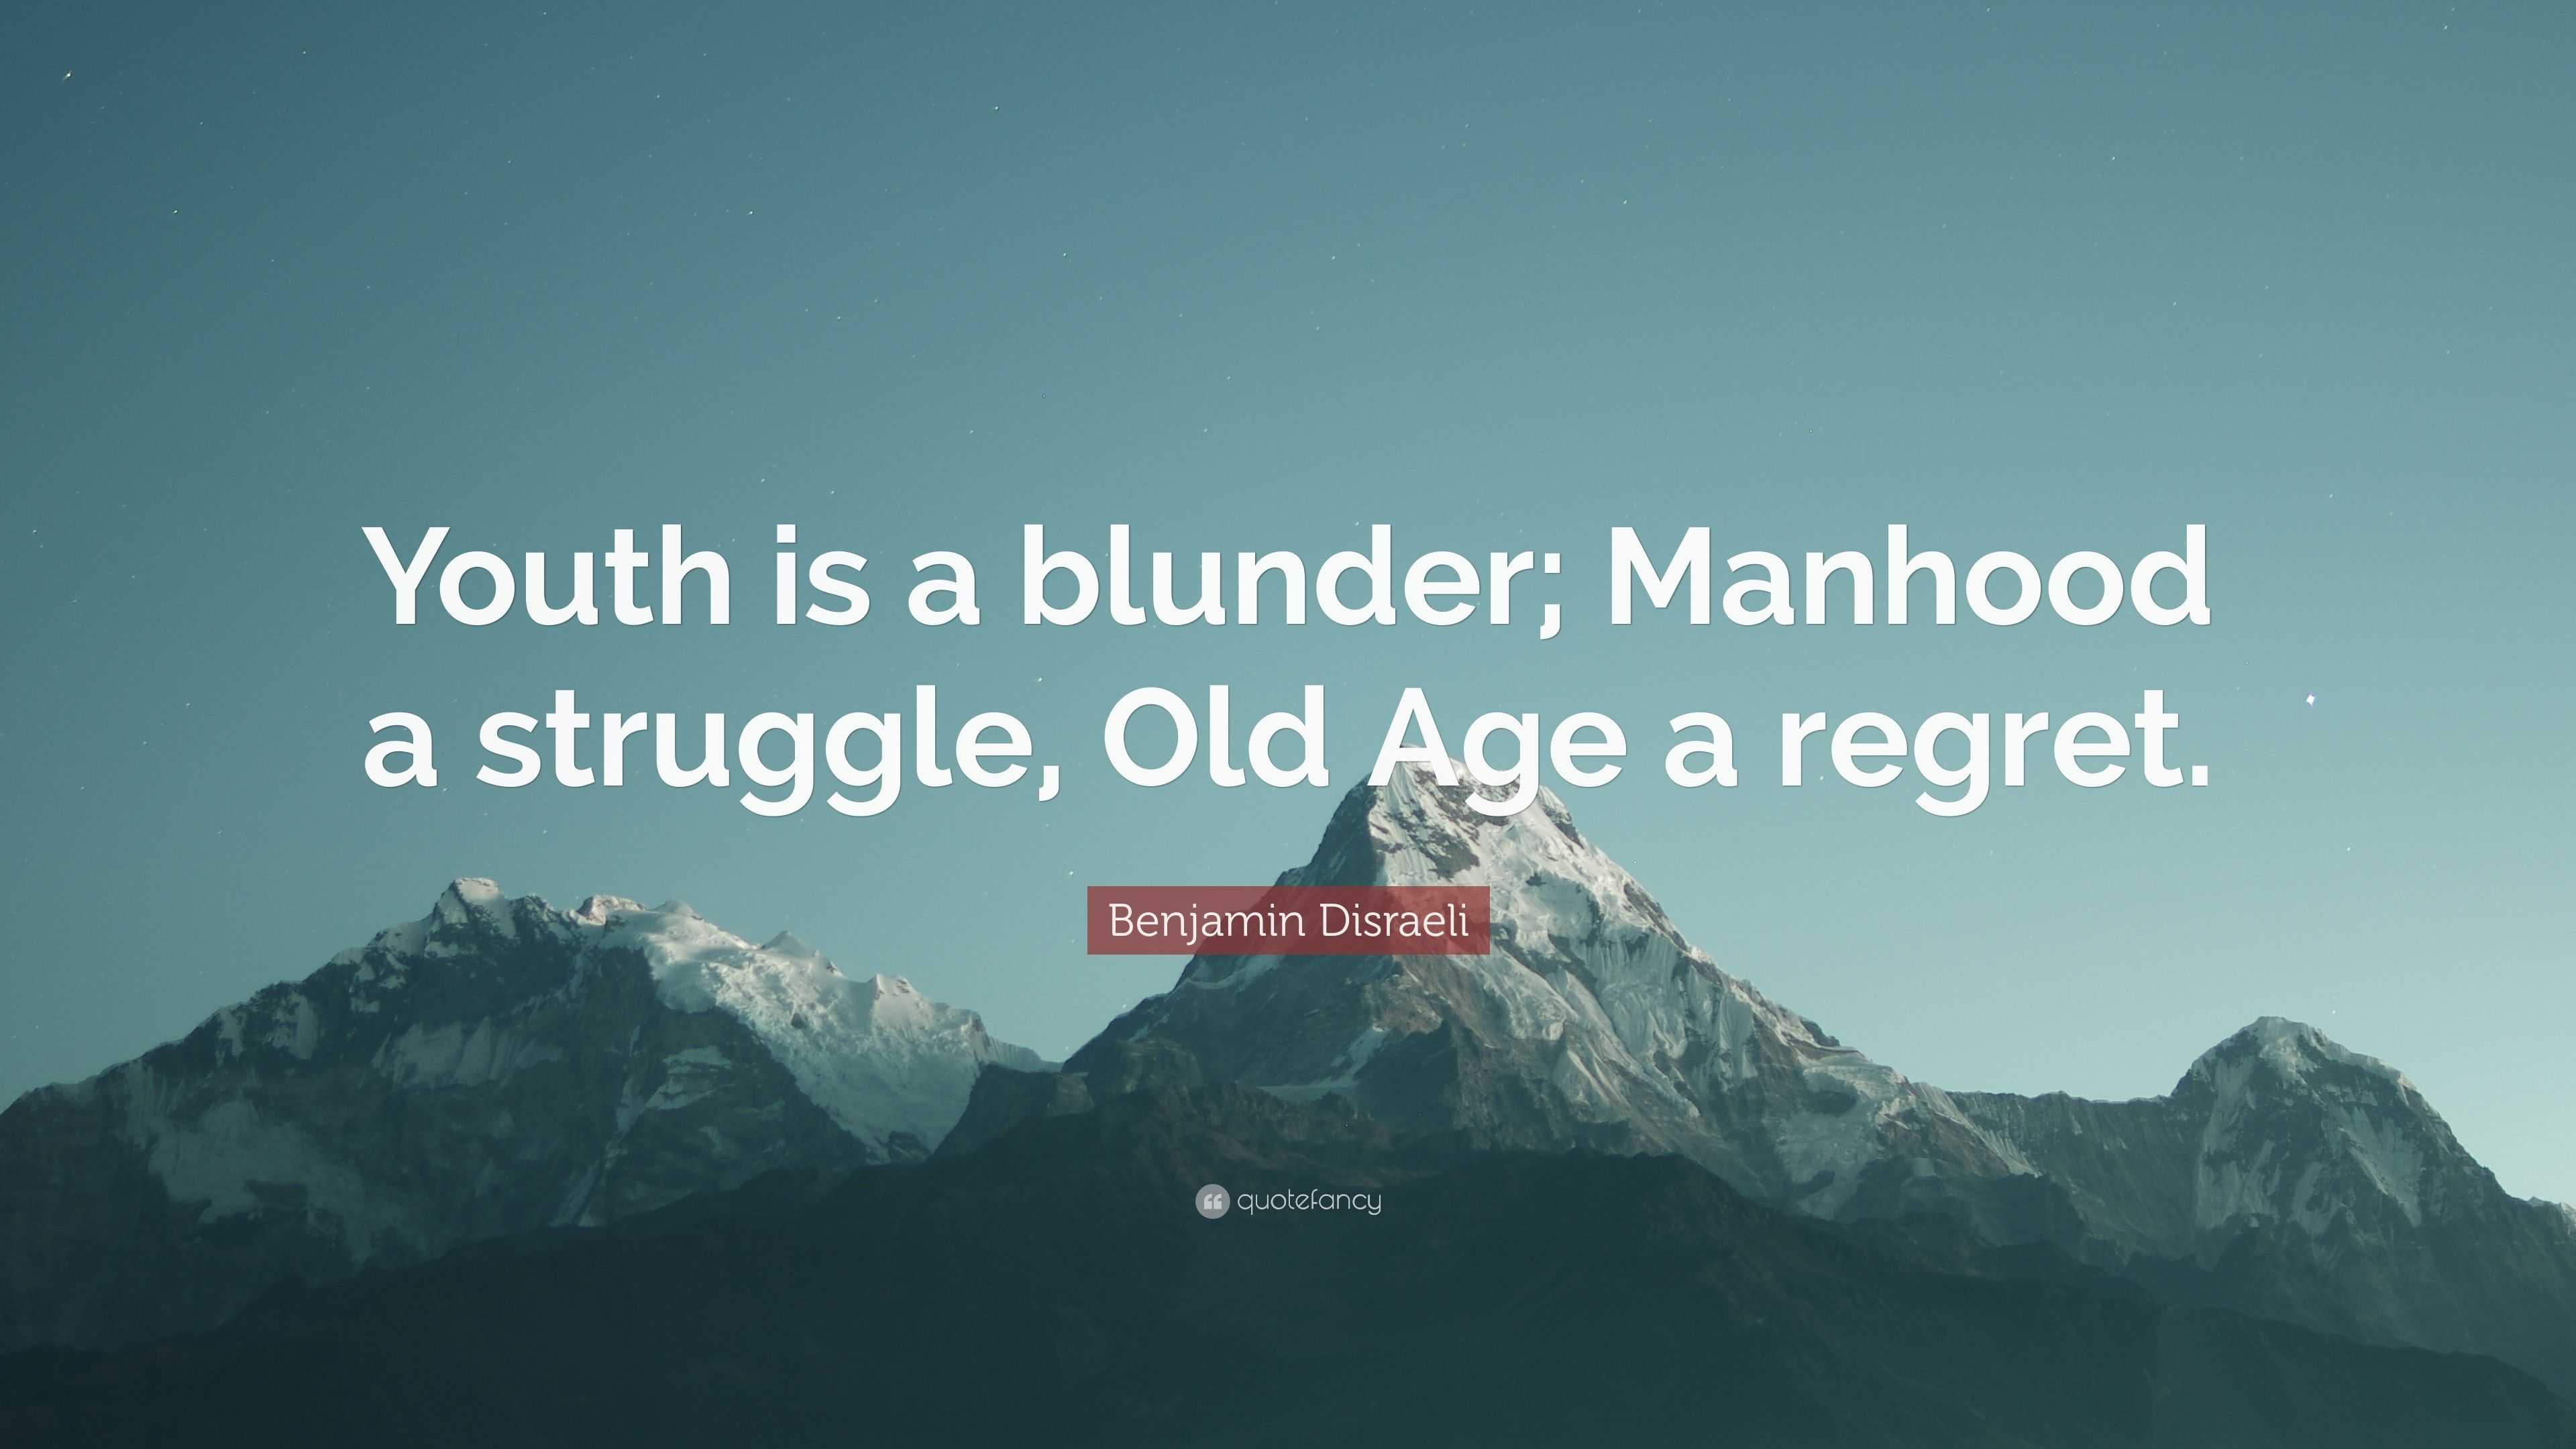 YOUTH IS A BLUNDER, MANHOOD A STRUGGLE, OLD AGE A REGRET - TriumphIAS